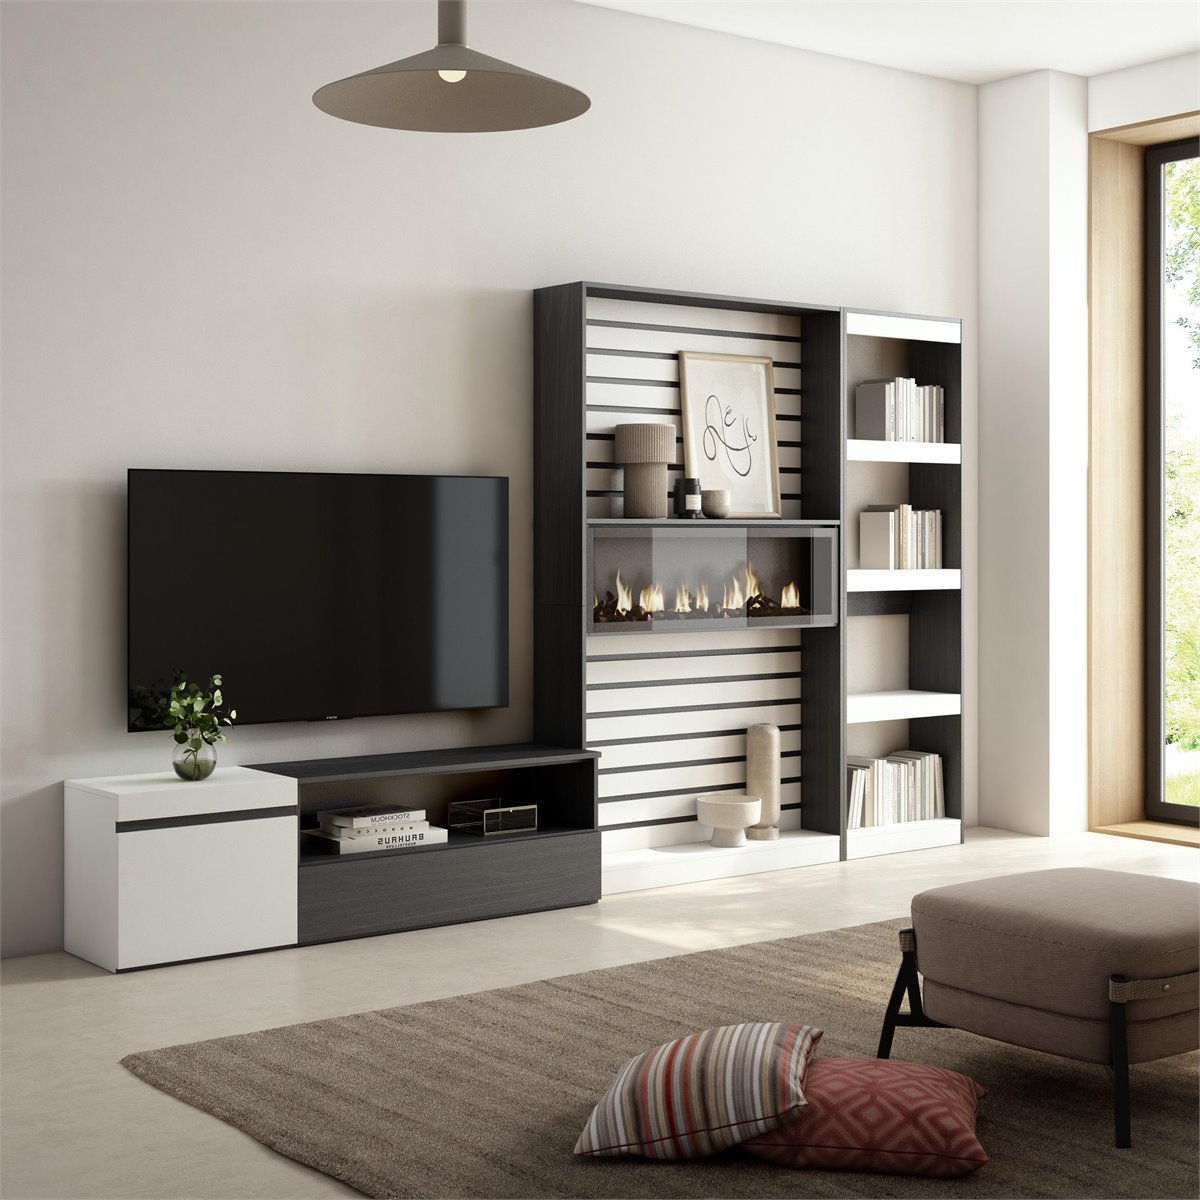 Muebles TV con chimenea - Calidad y Estilo